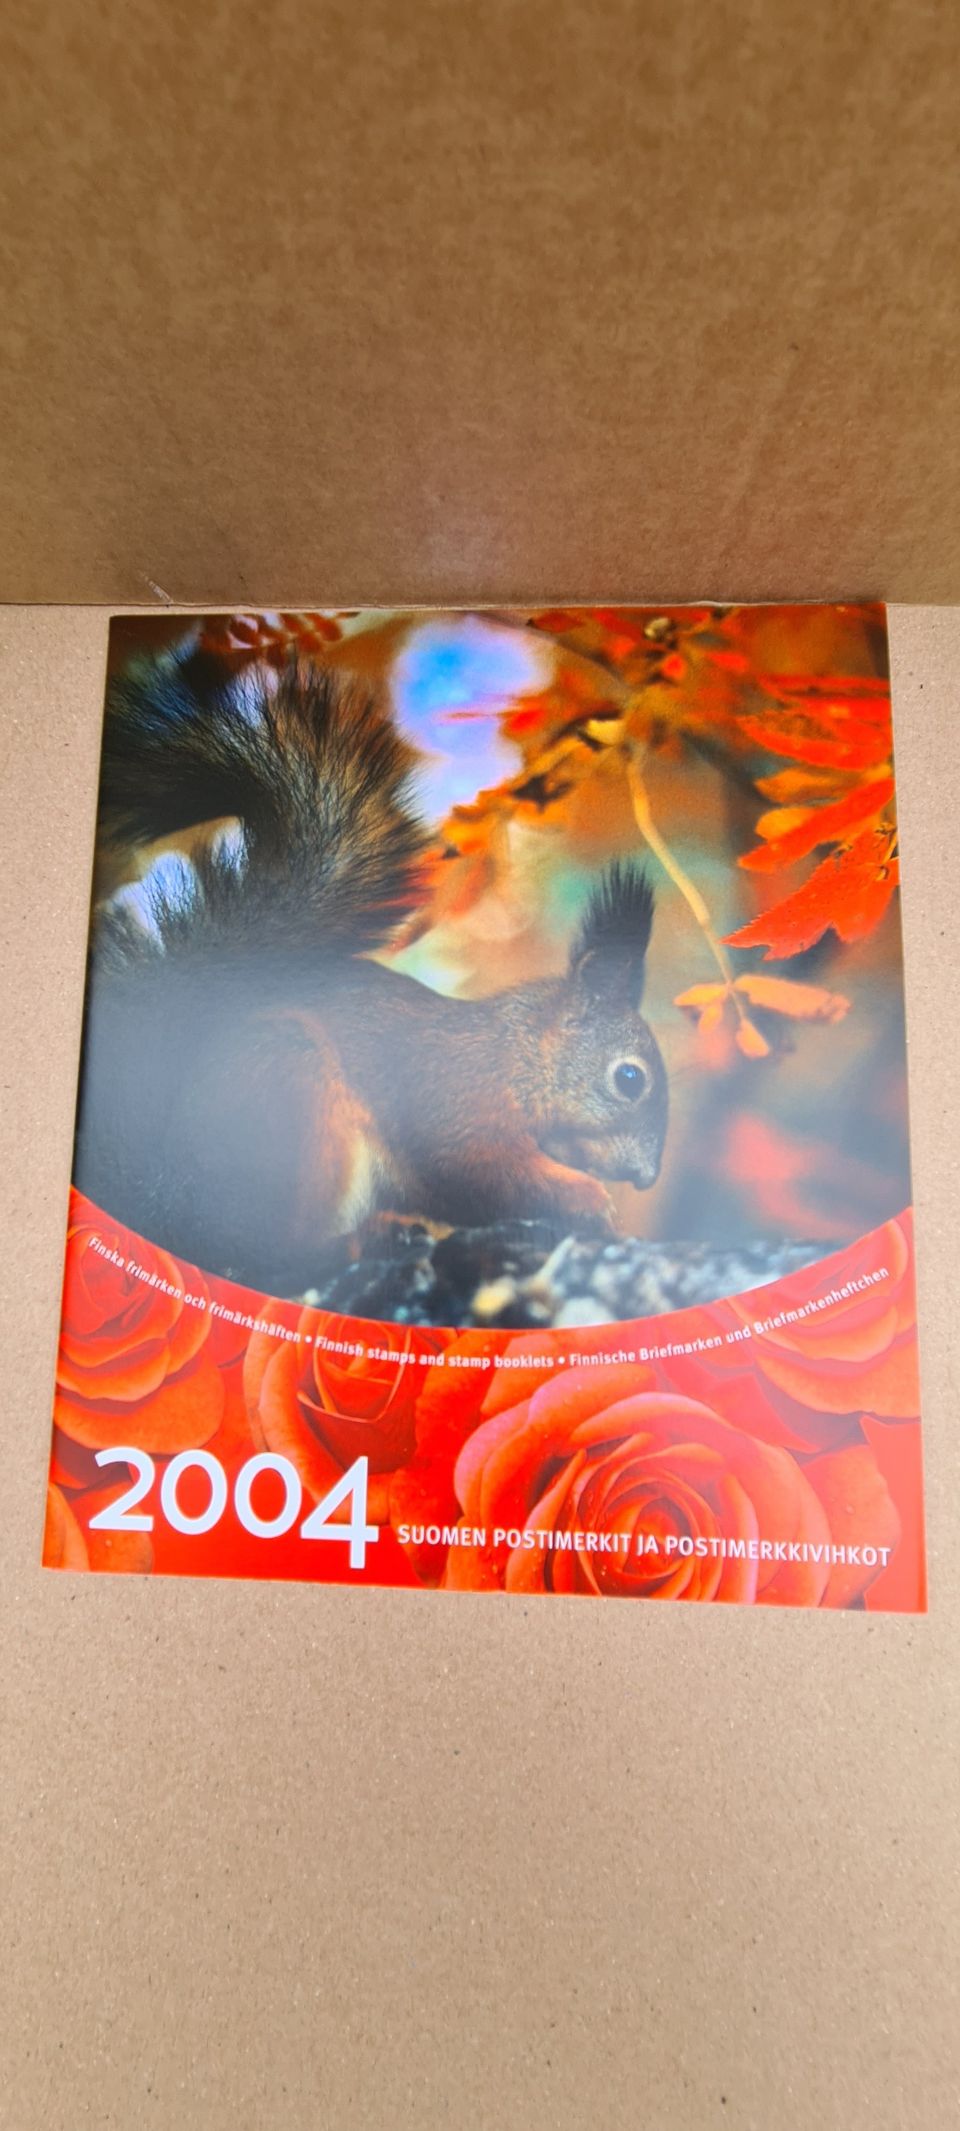 2004 koko vuoden postimerkit.